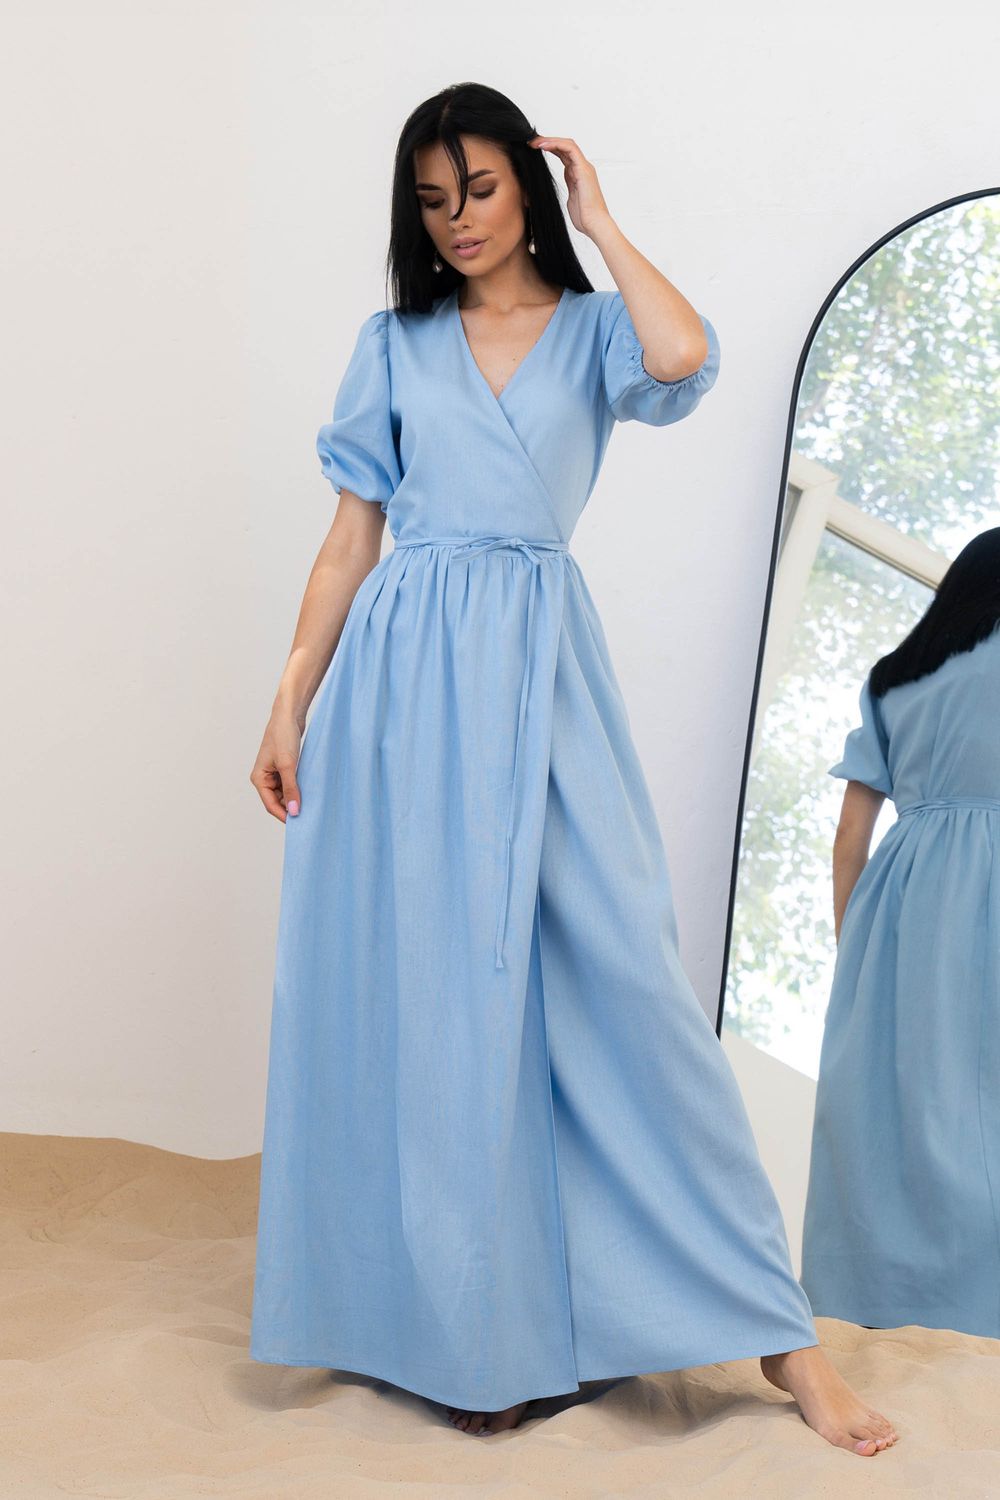 Довге літнє плаття з льону блакитного кольору - фото